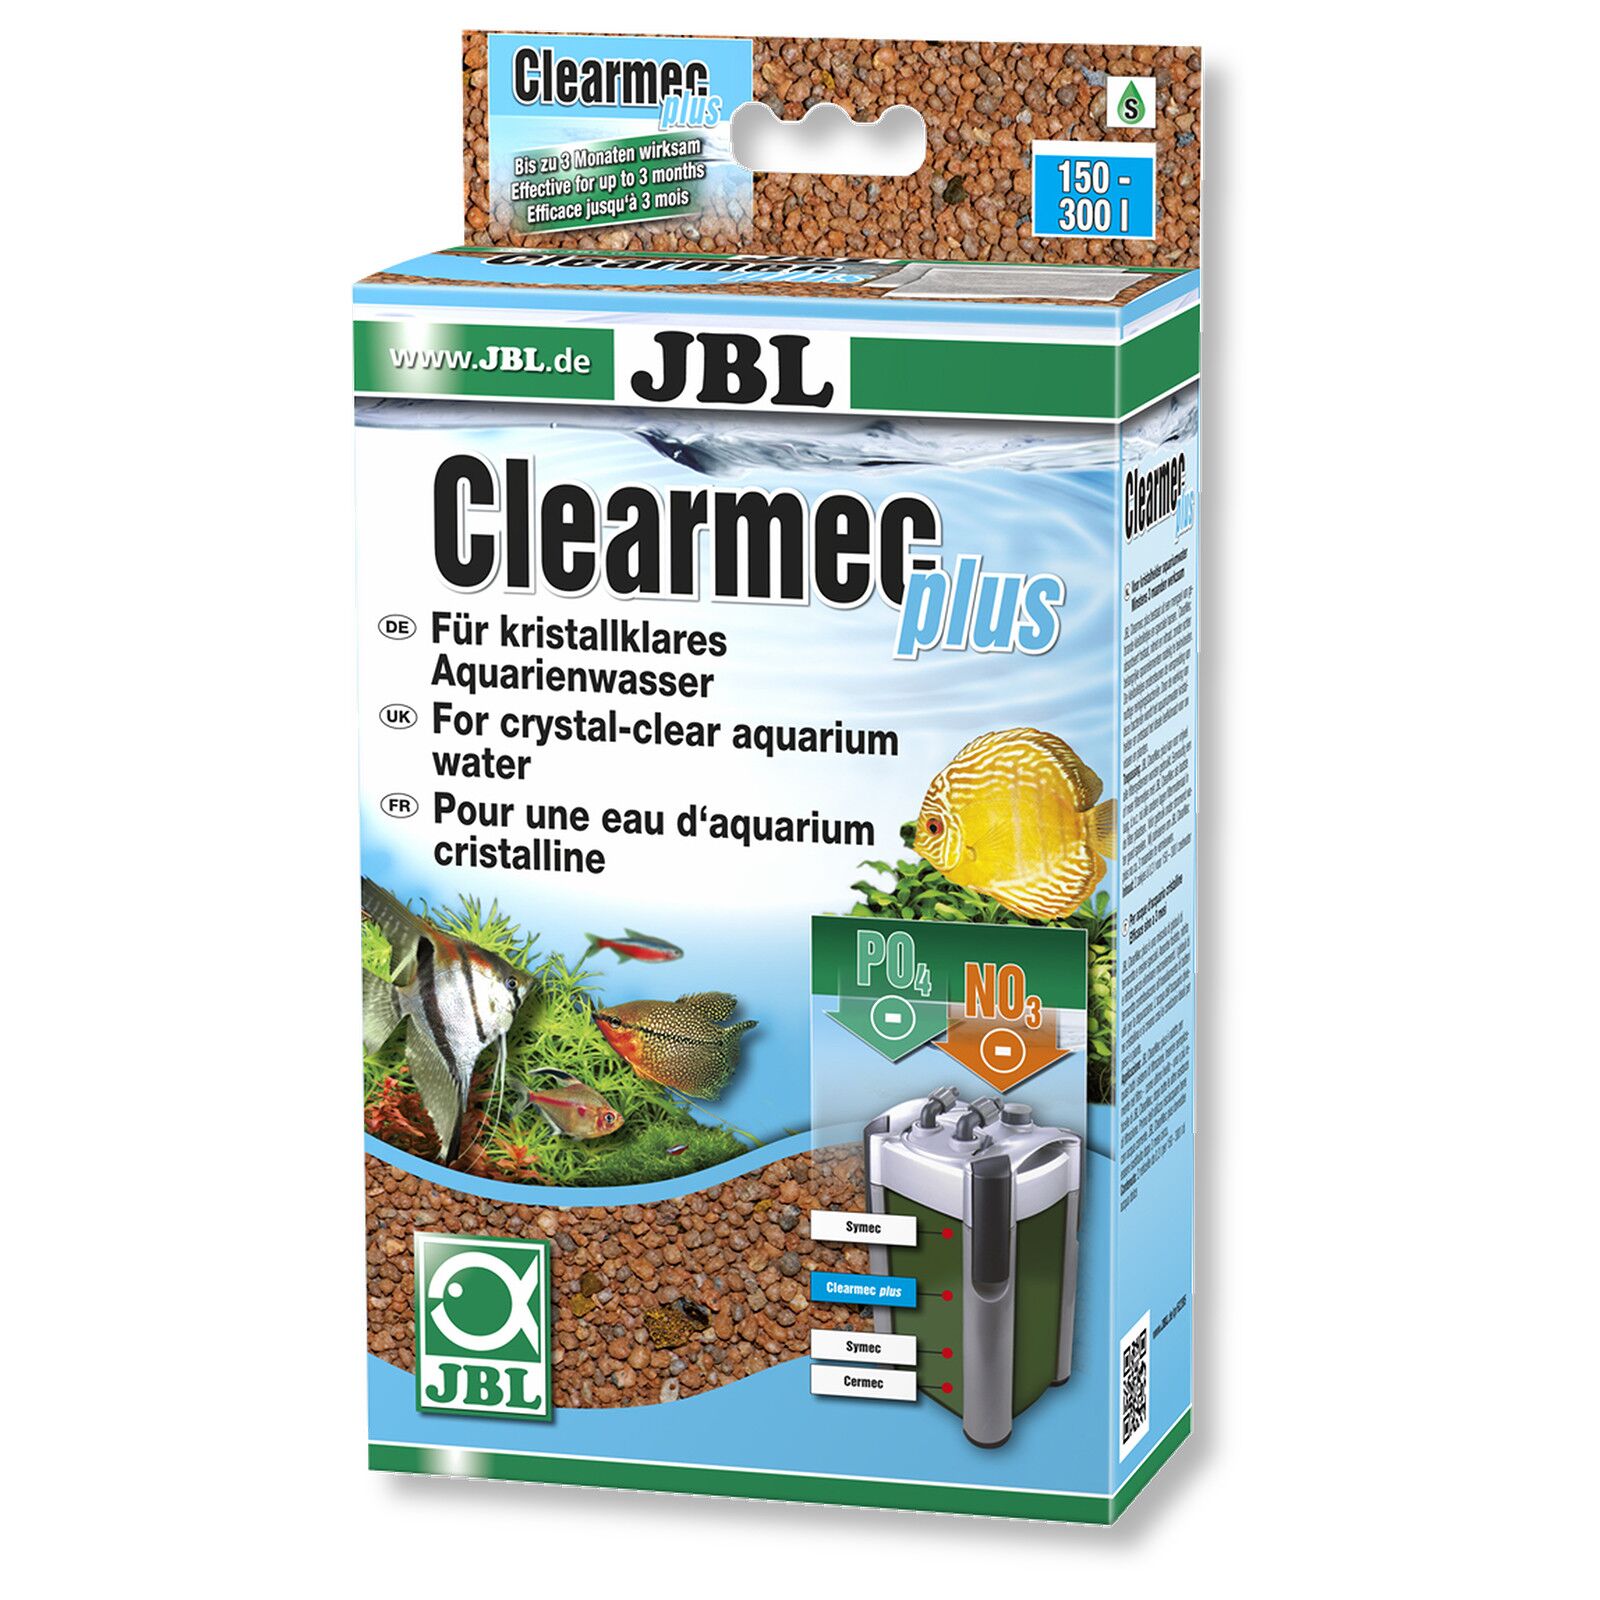 JBL - Clearmec - plus - 450 g